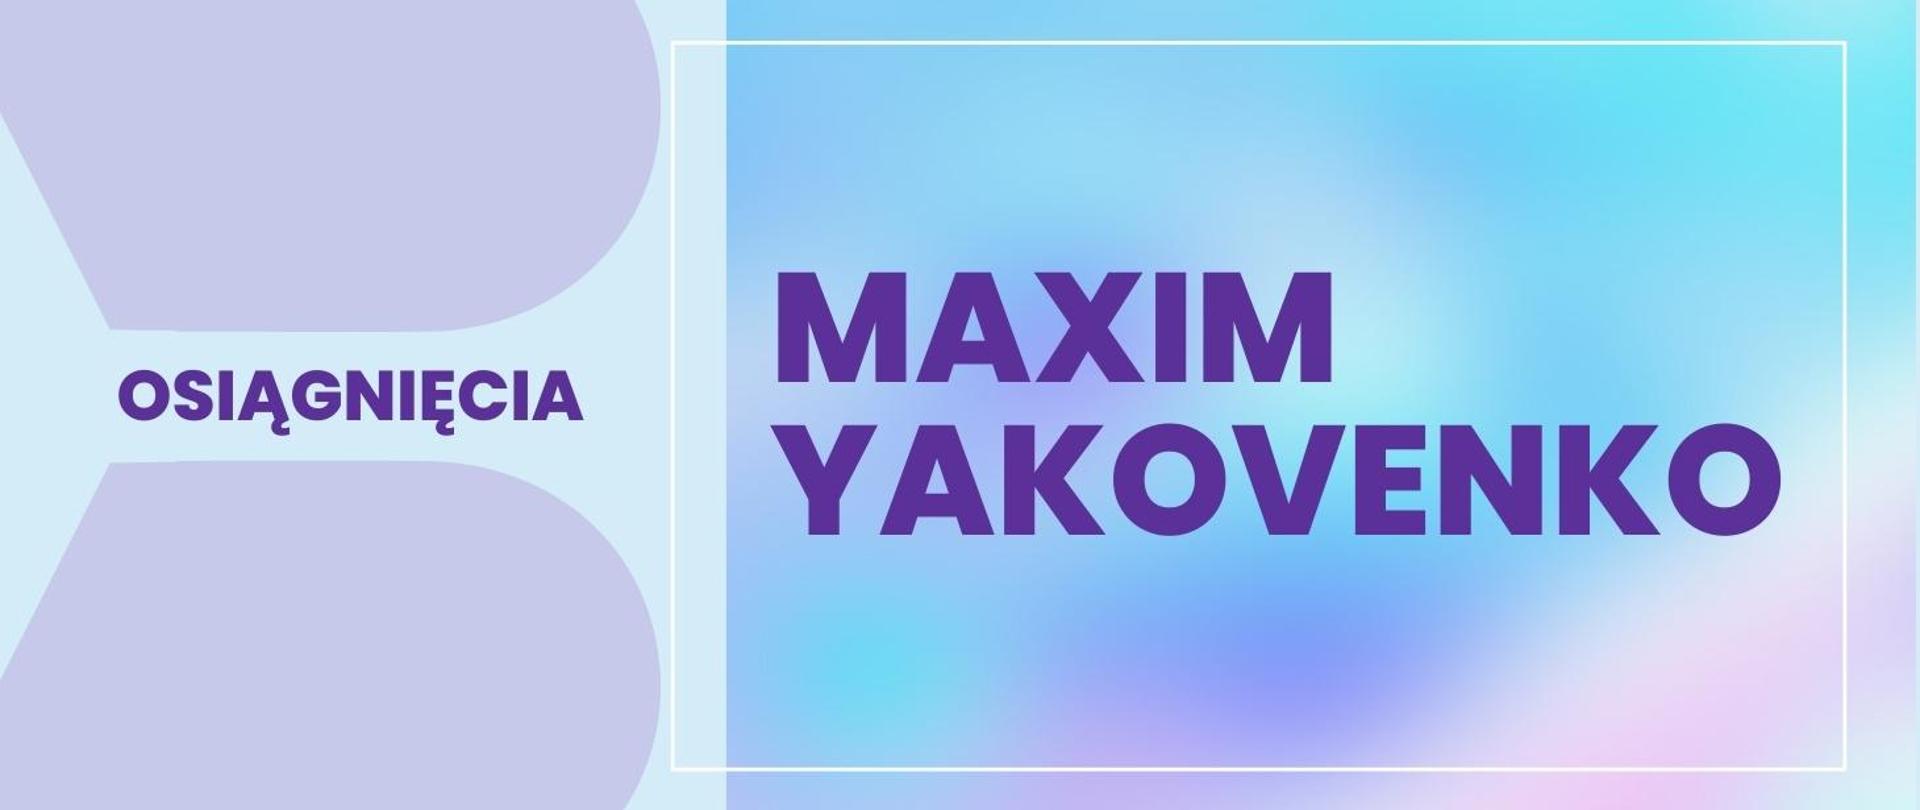 Na niebieskim tle wymienione osiągnięcia Maxima.